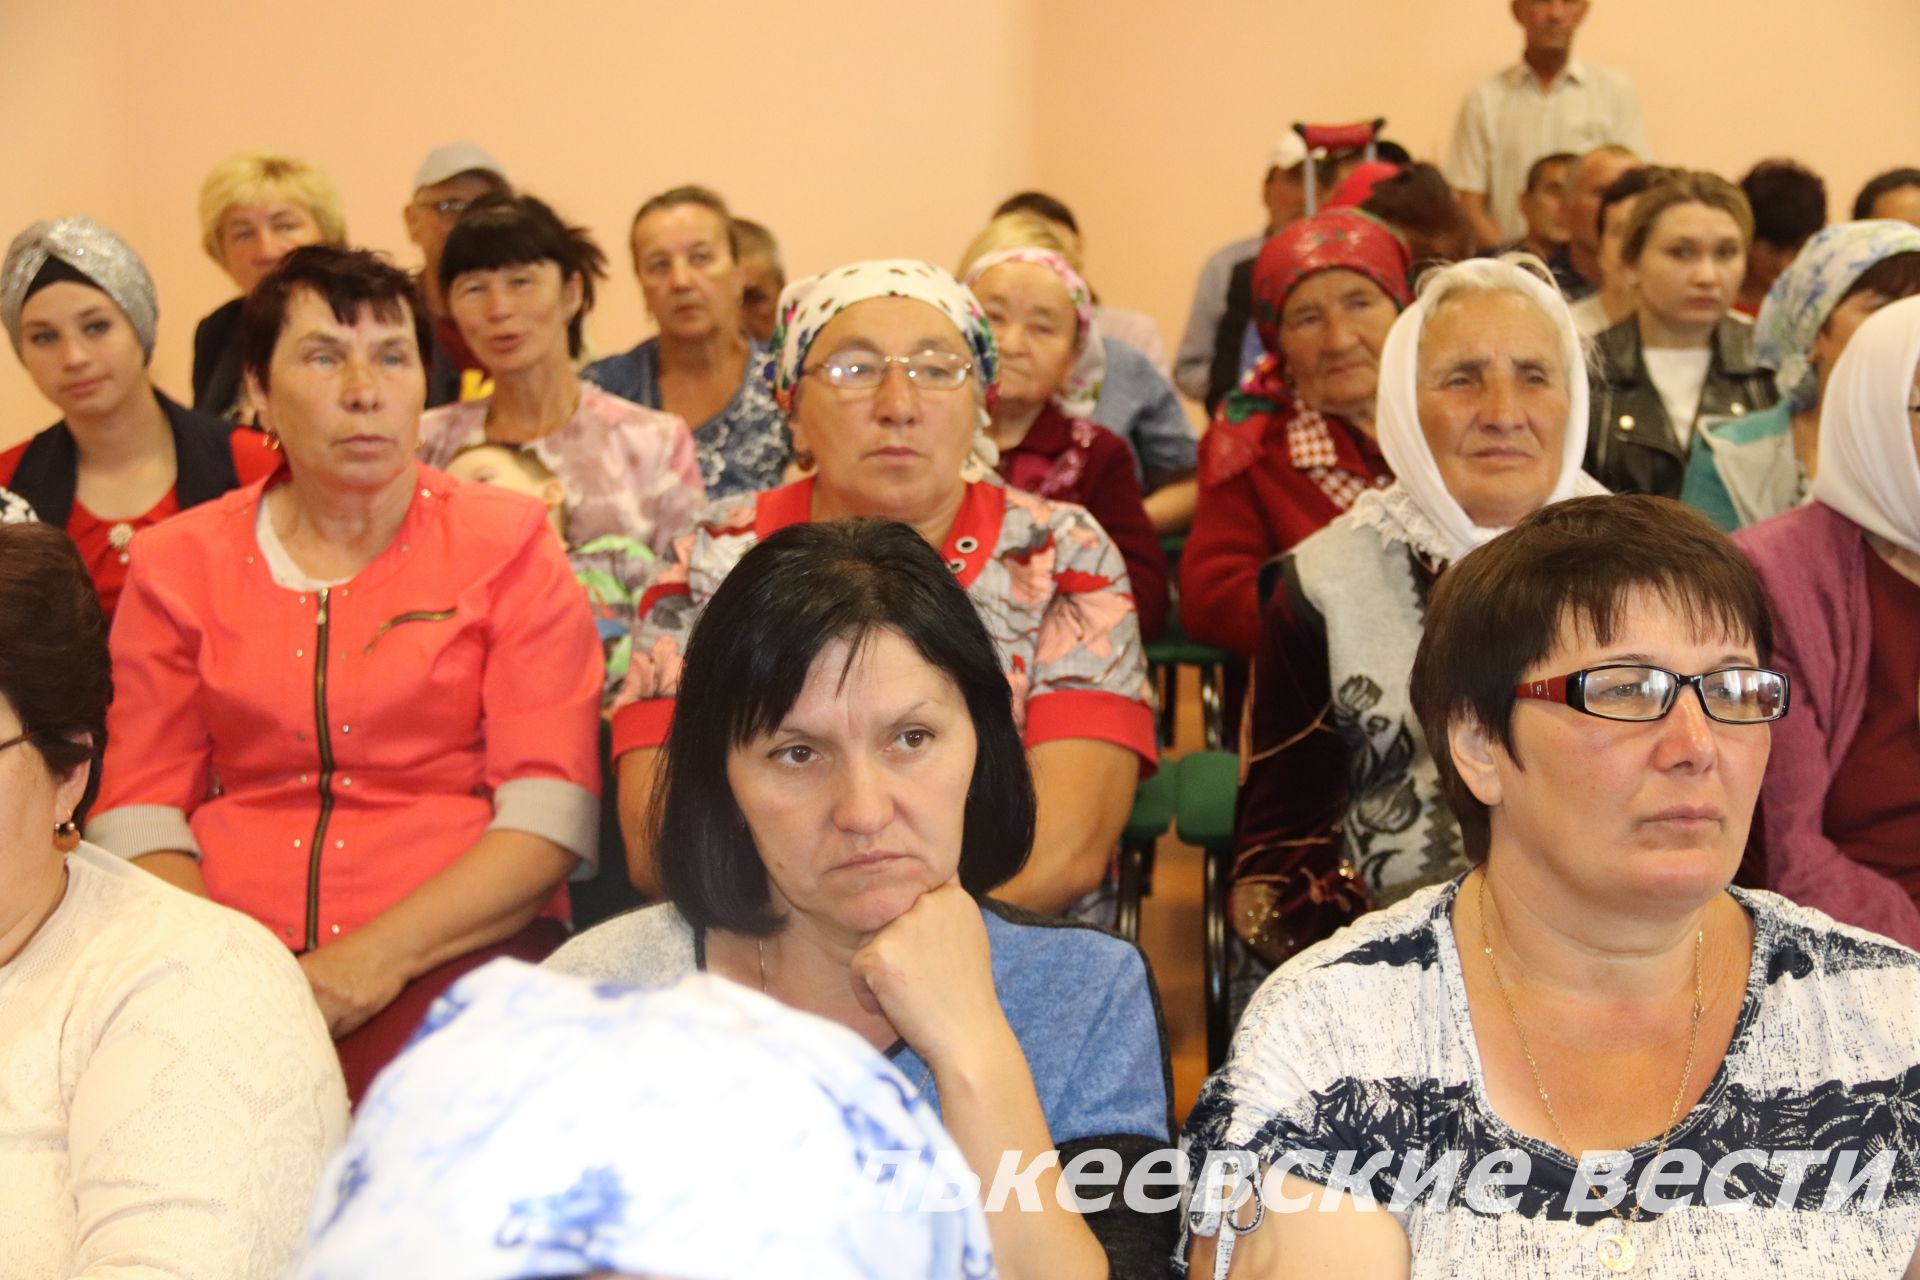 В деревне Верхнее Алькеево Алькеевского района состоялось торжественное открытие клуба